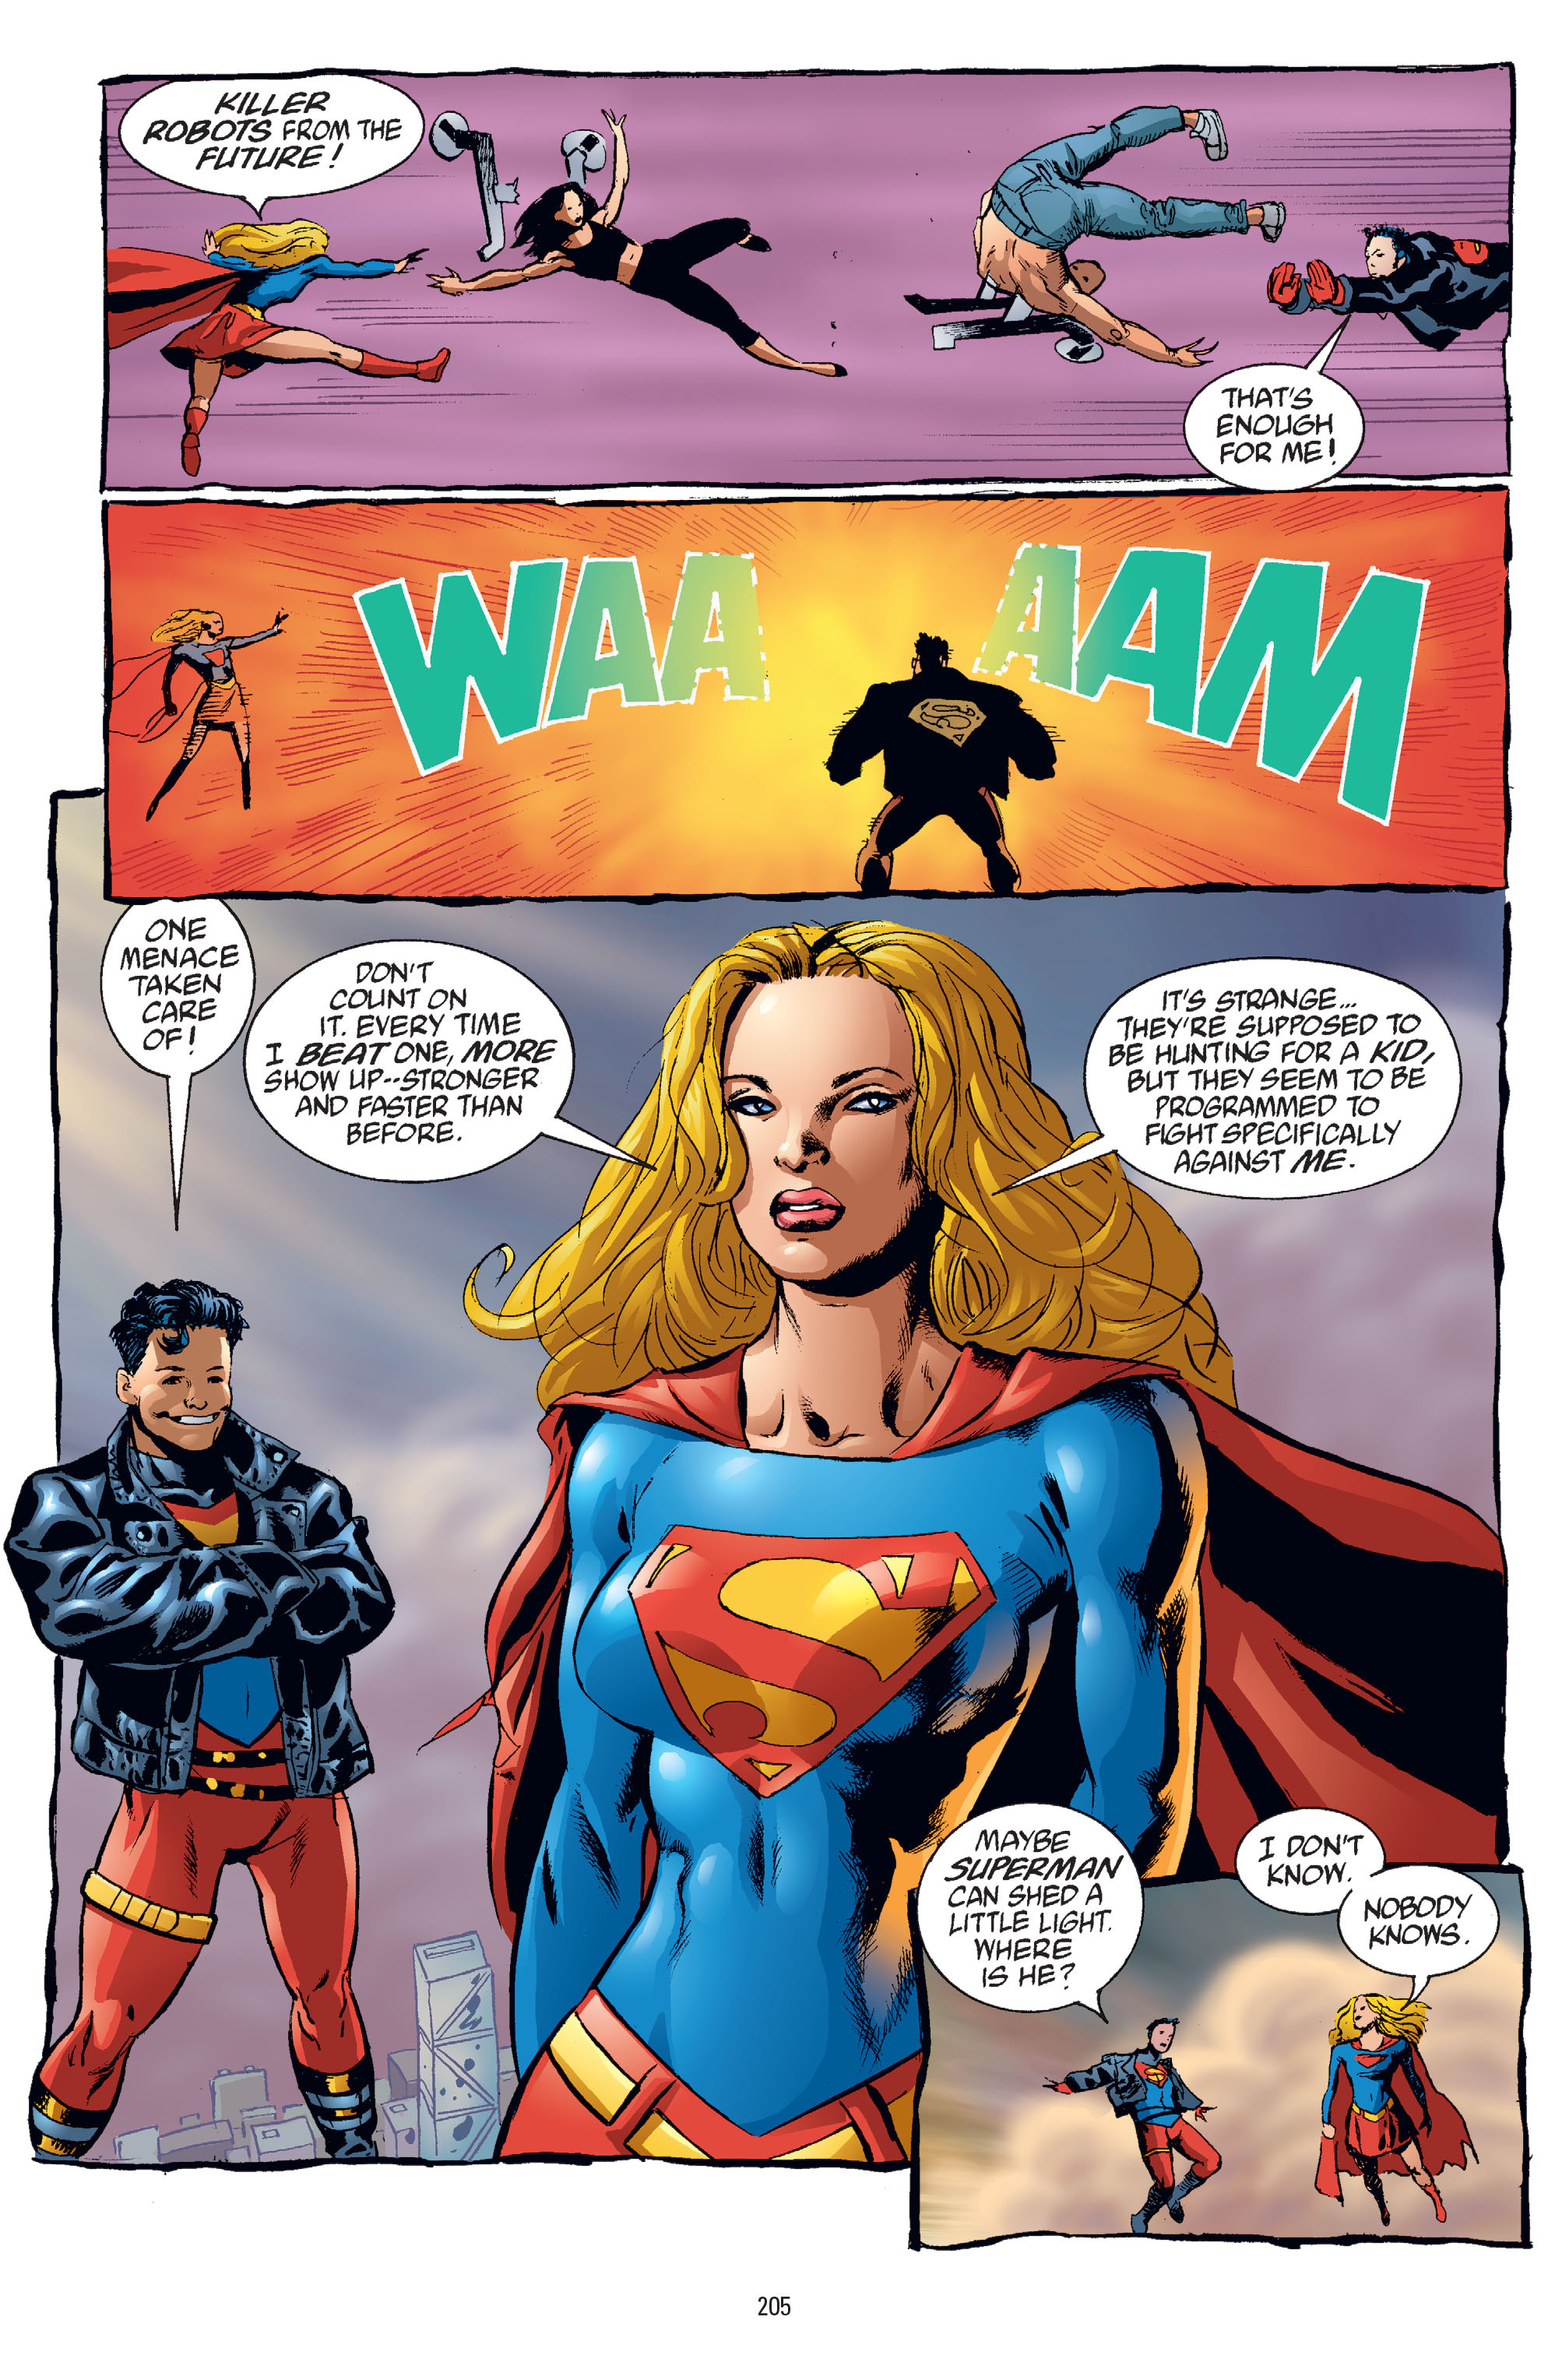 DC Comics/Dark Horse Comics: Justice League Full #1 - English 199